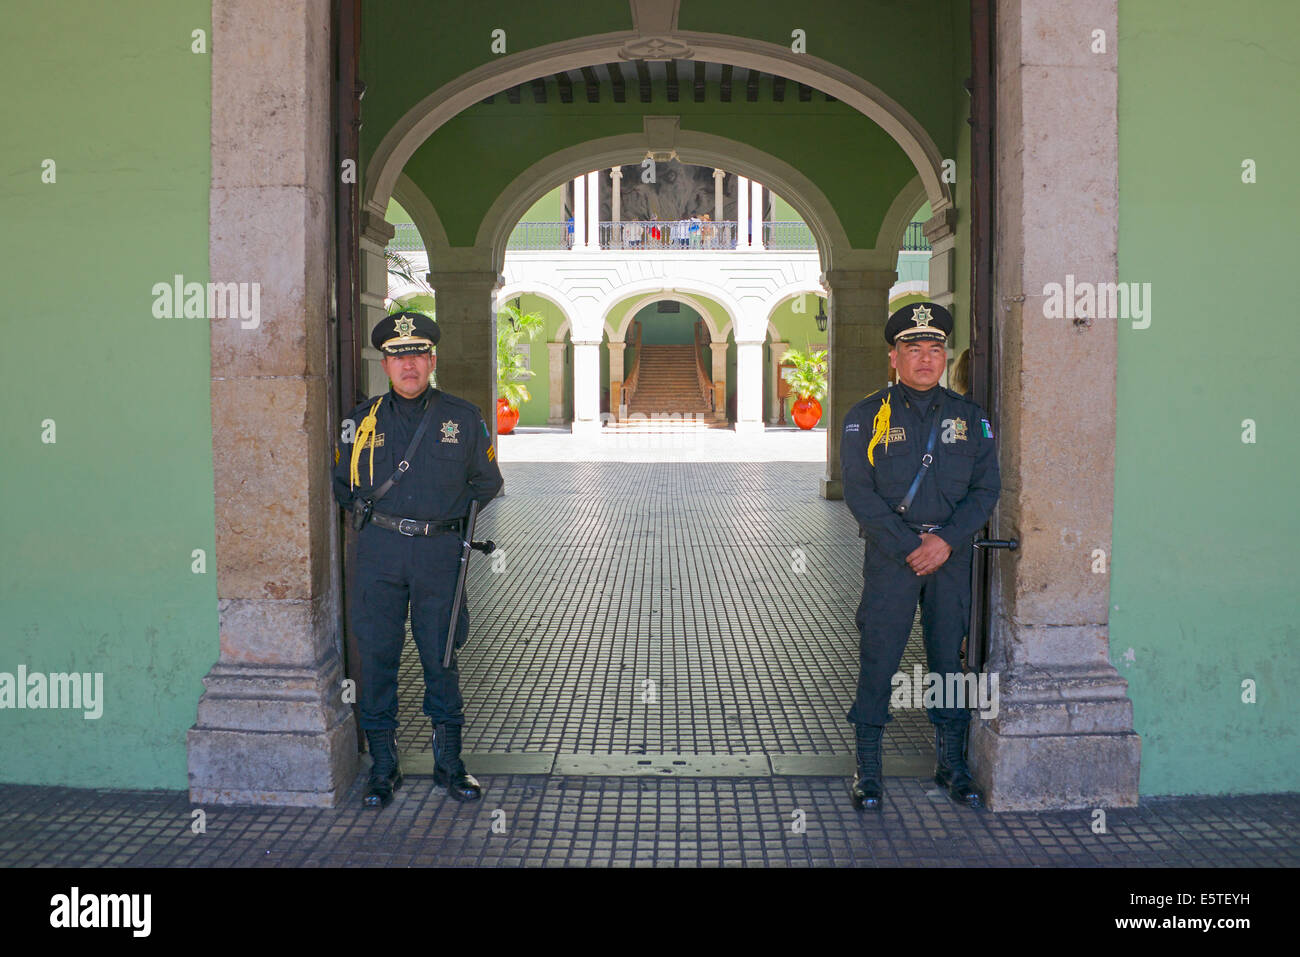 Les gardes de la police et de l'entrée de l'hôtel de ville Palais des Gouverneurs maintenant Merida Yucatan Mexique Banque D'Images